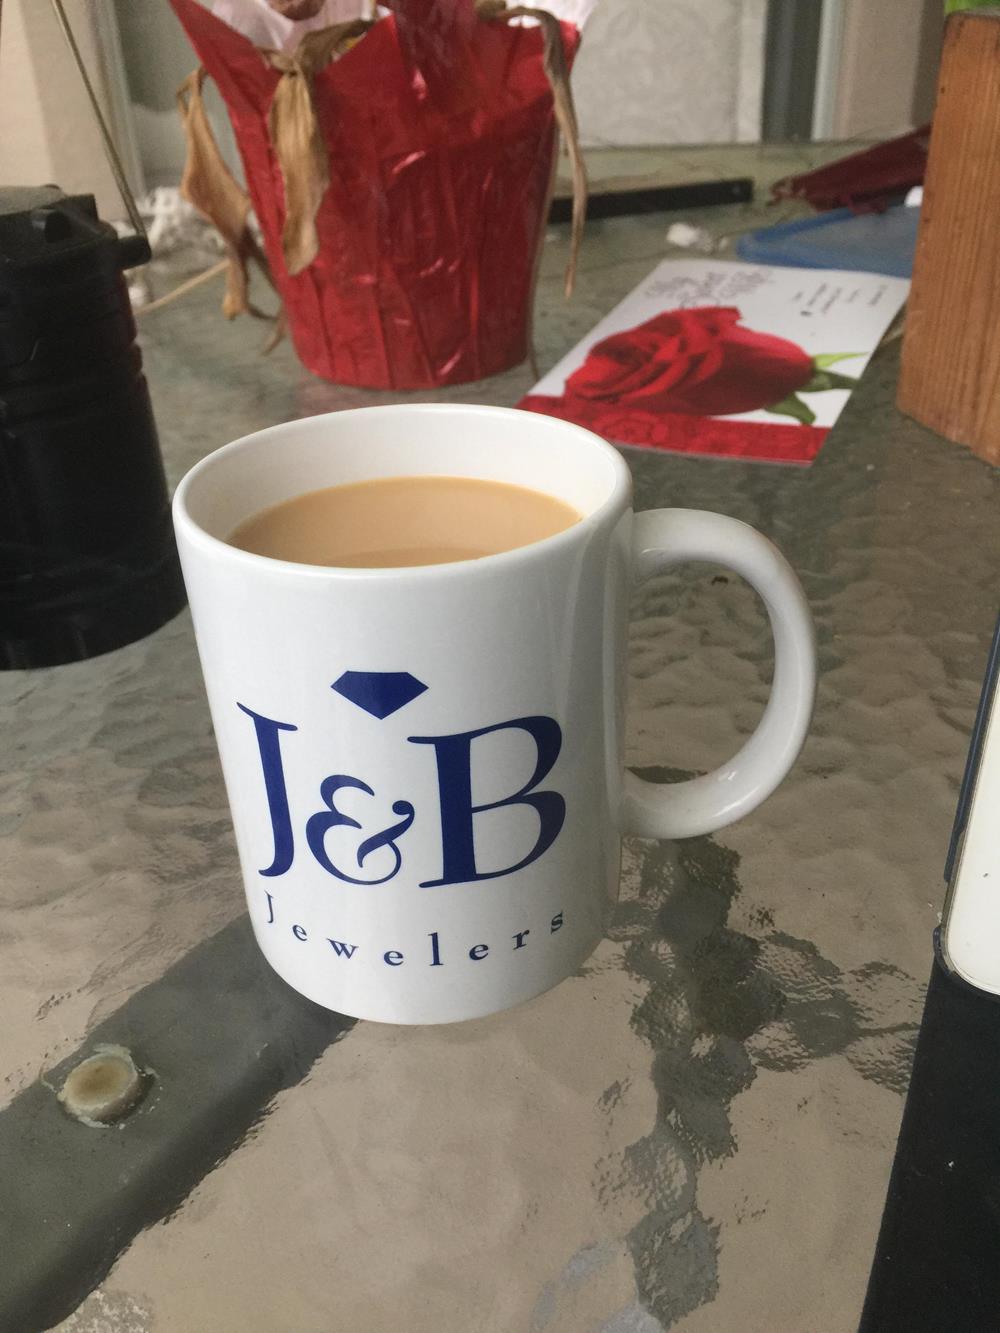 a coffee mug with a liquid in it